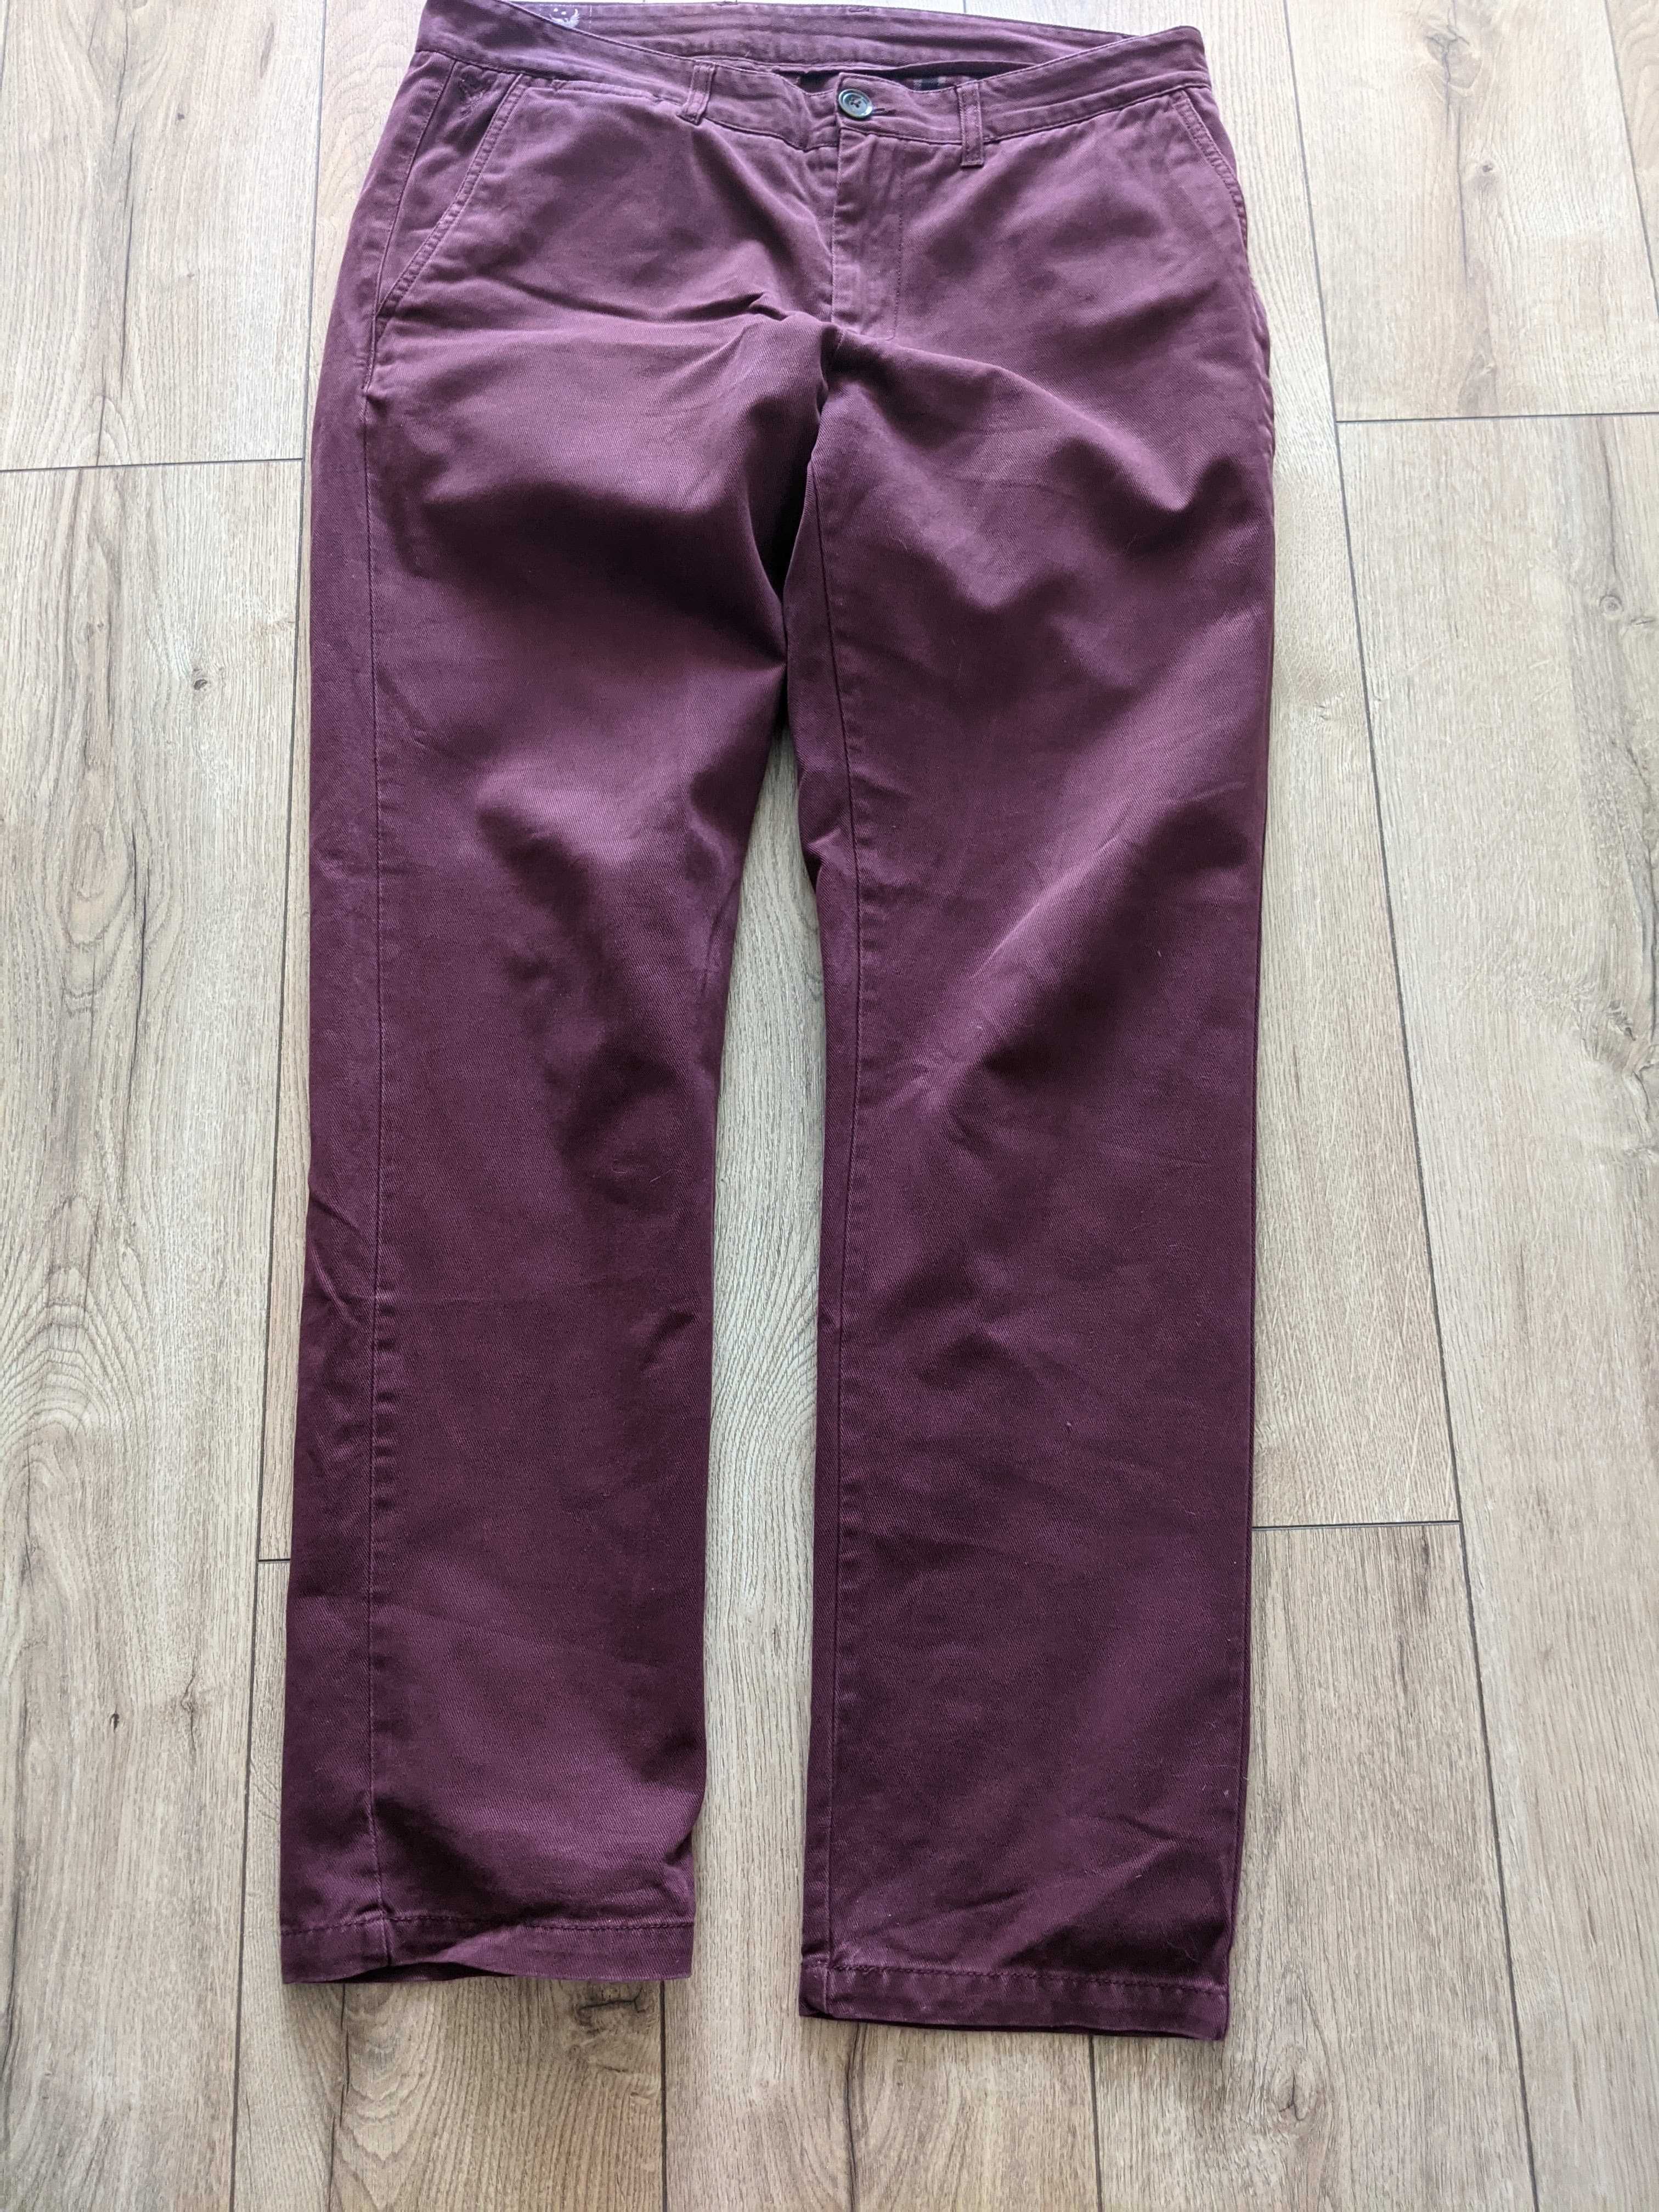 Spodnie męskie 34/32 fajny kolor Bytom coton pas96